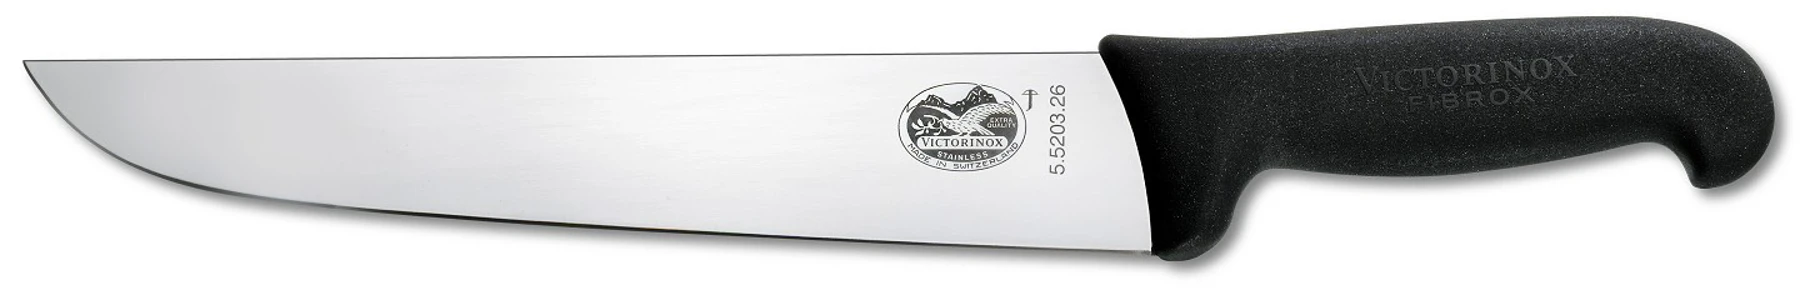 Victorinox  kuchársky nôž 5.5203